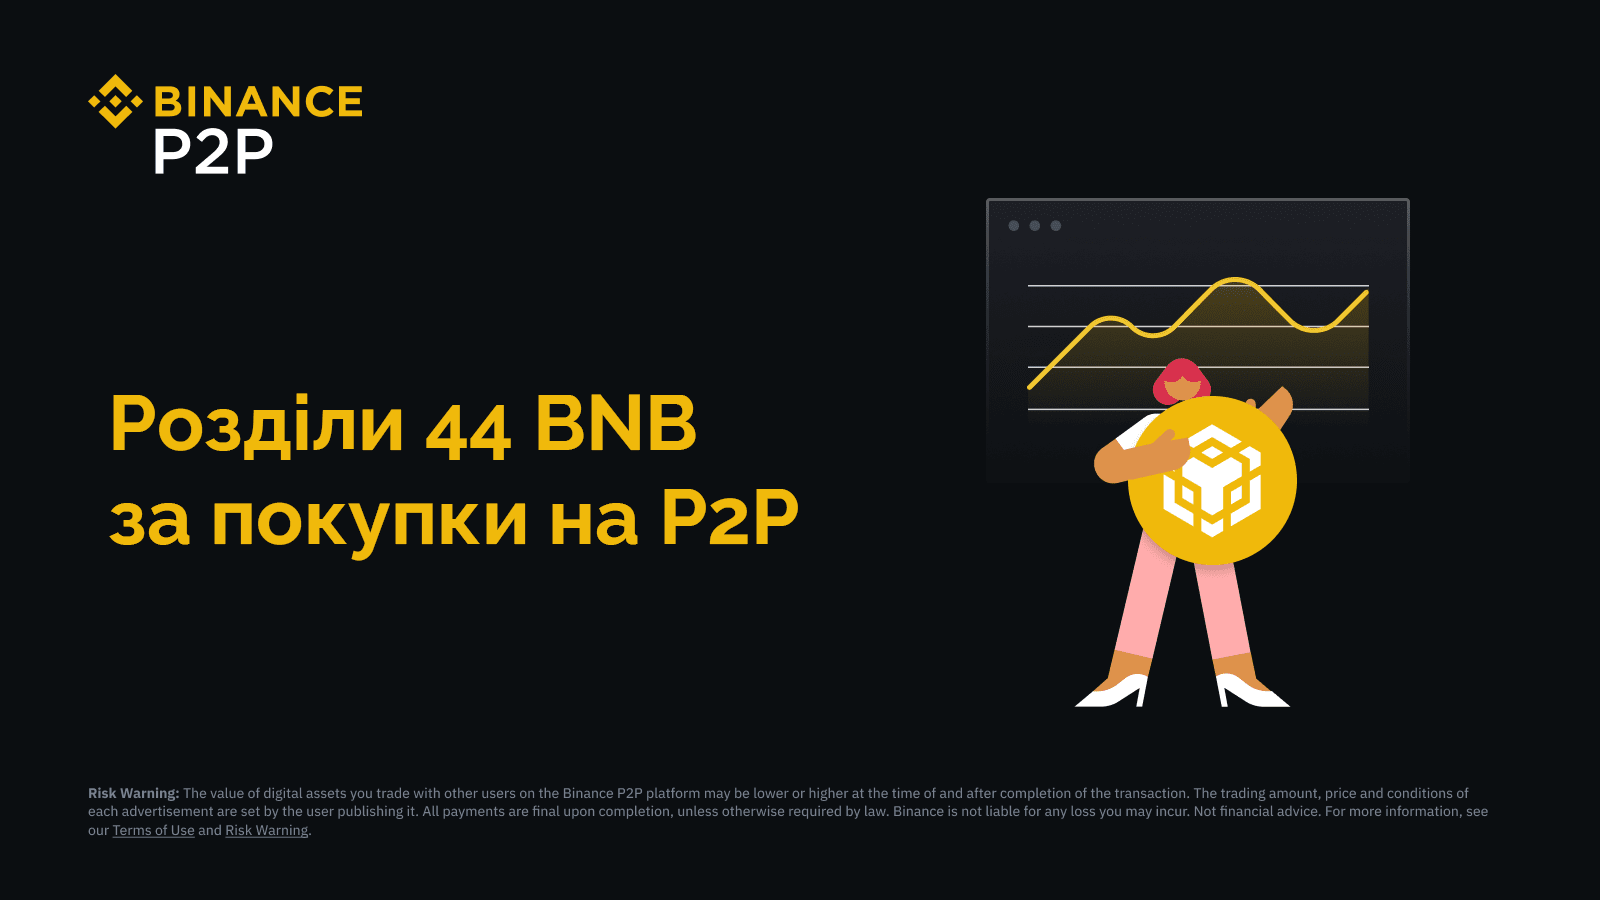 🟡 Акція на P2P-ринку Binance: розділи до 44 BNB за покупку крипти